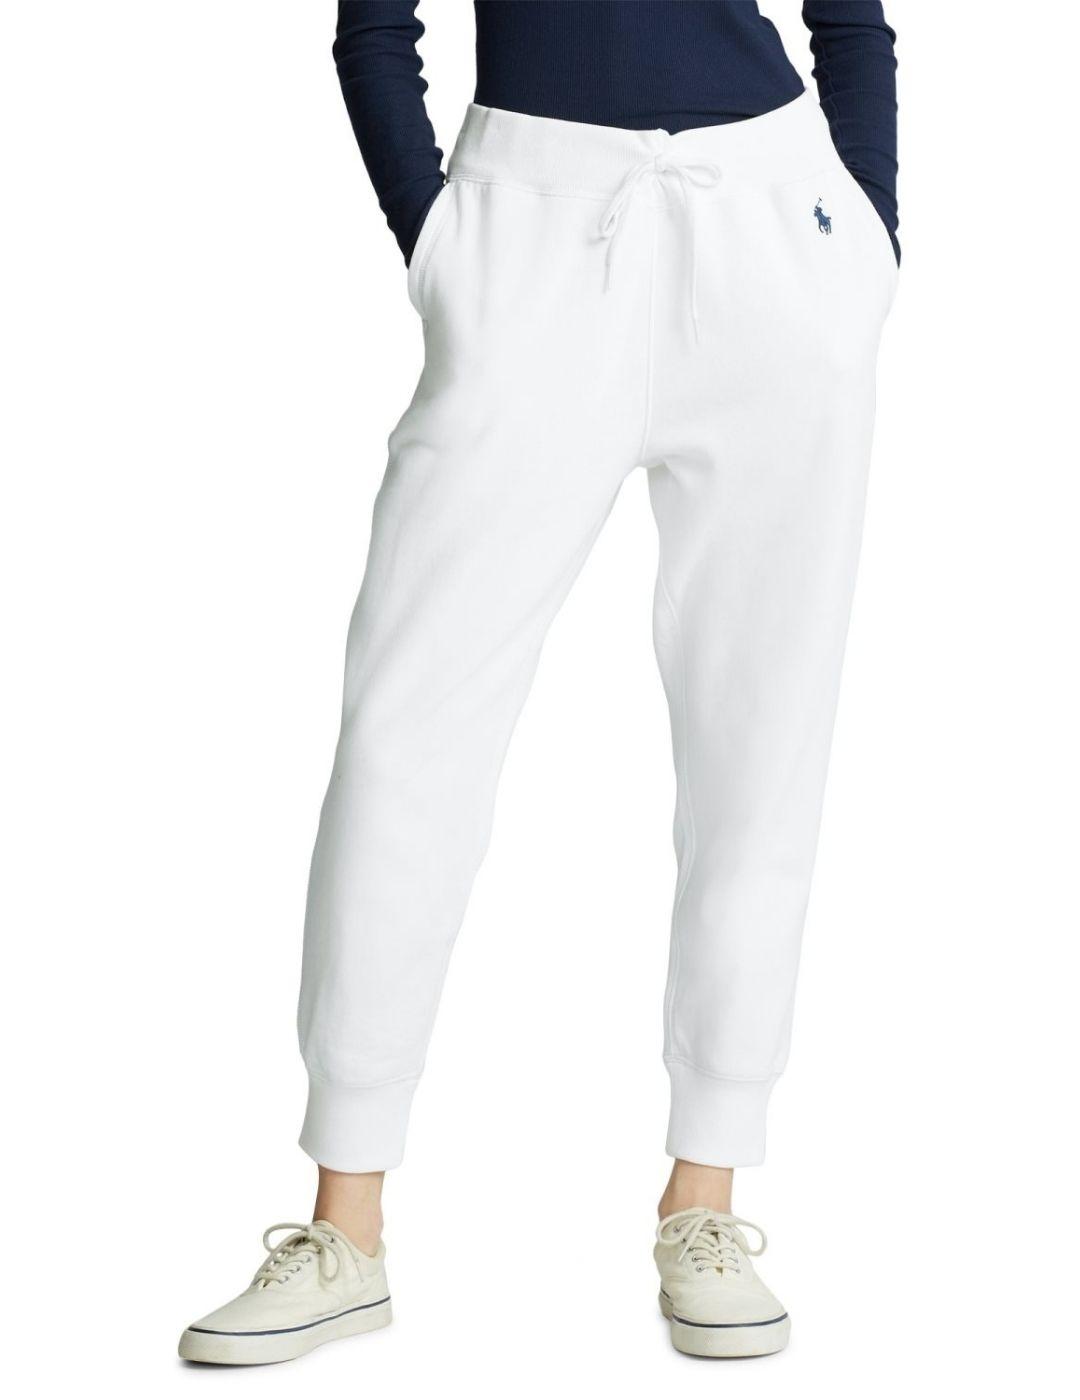 Pantalón de chándal Polo Ralph Lauren blanco de mujer